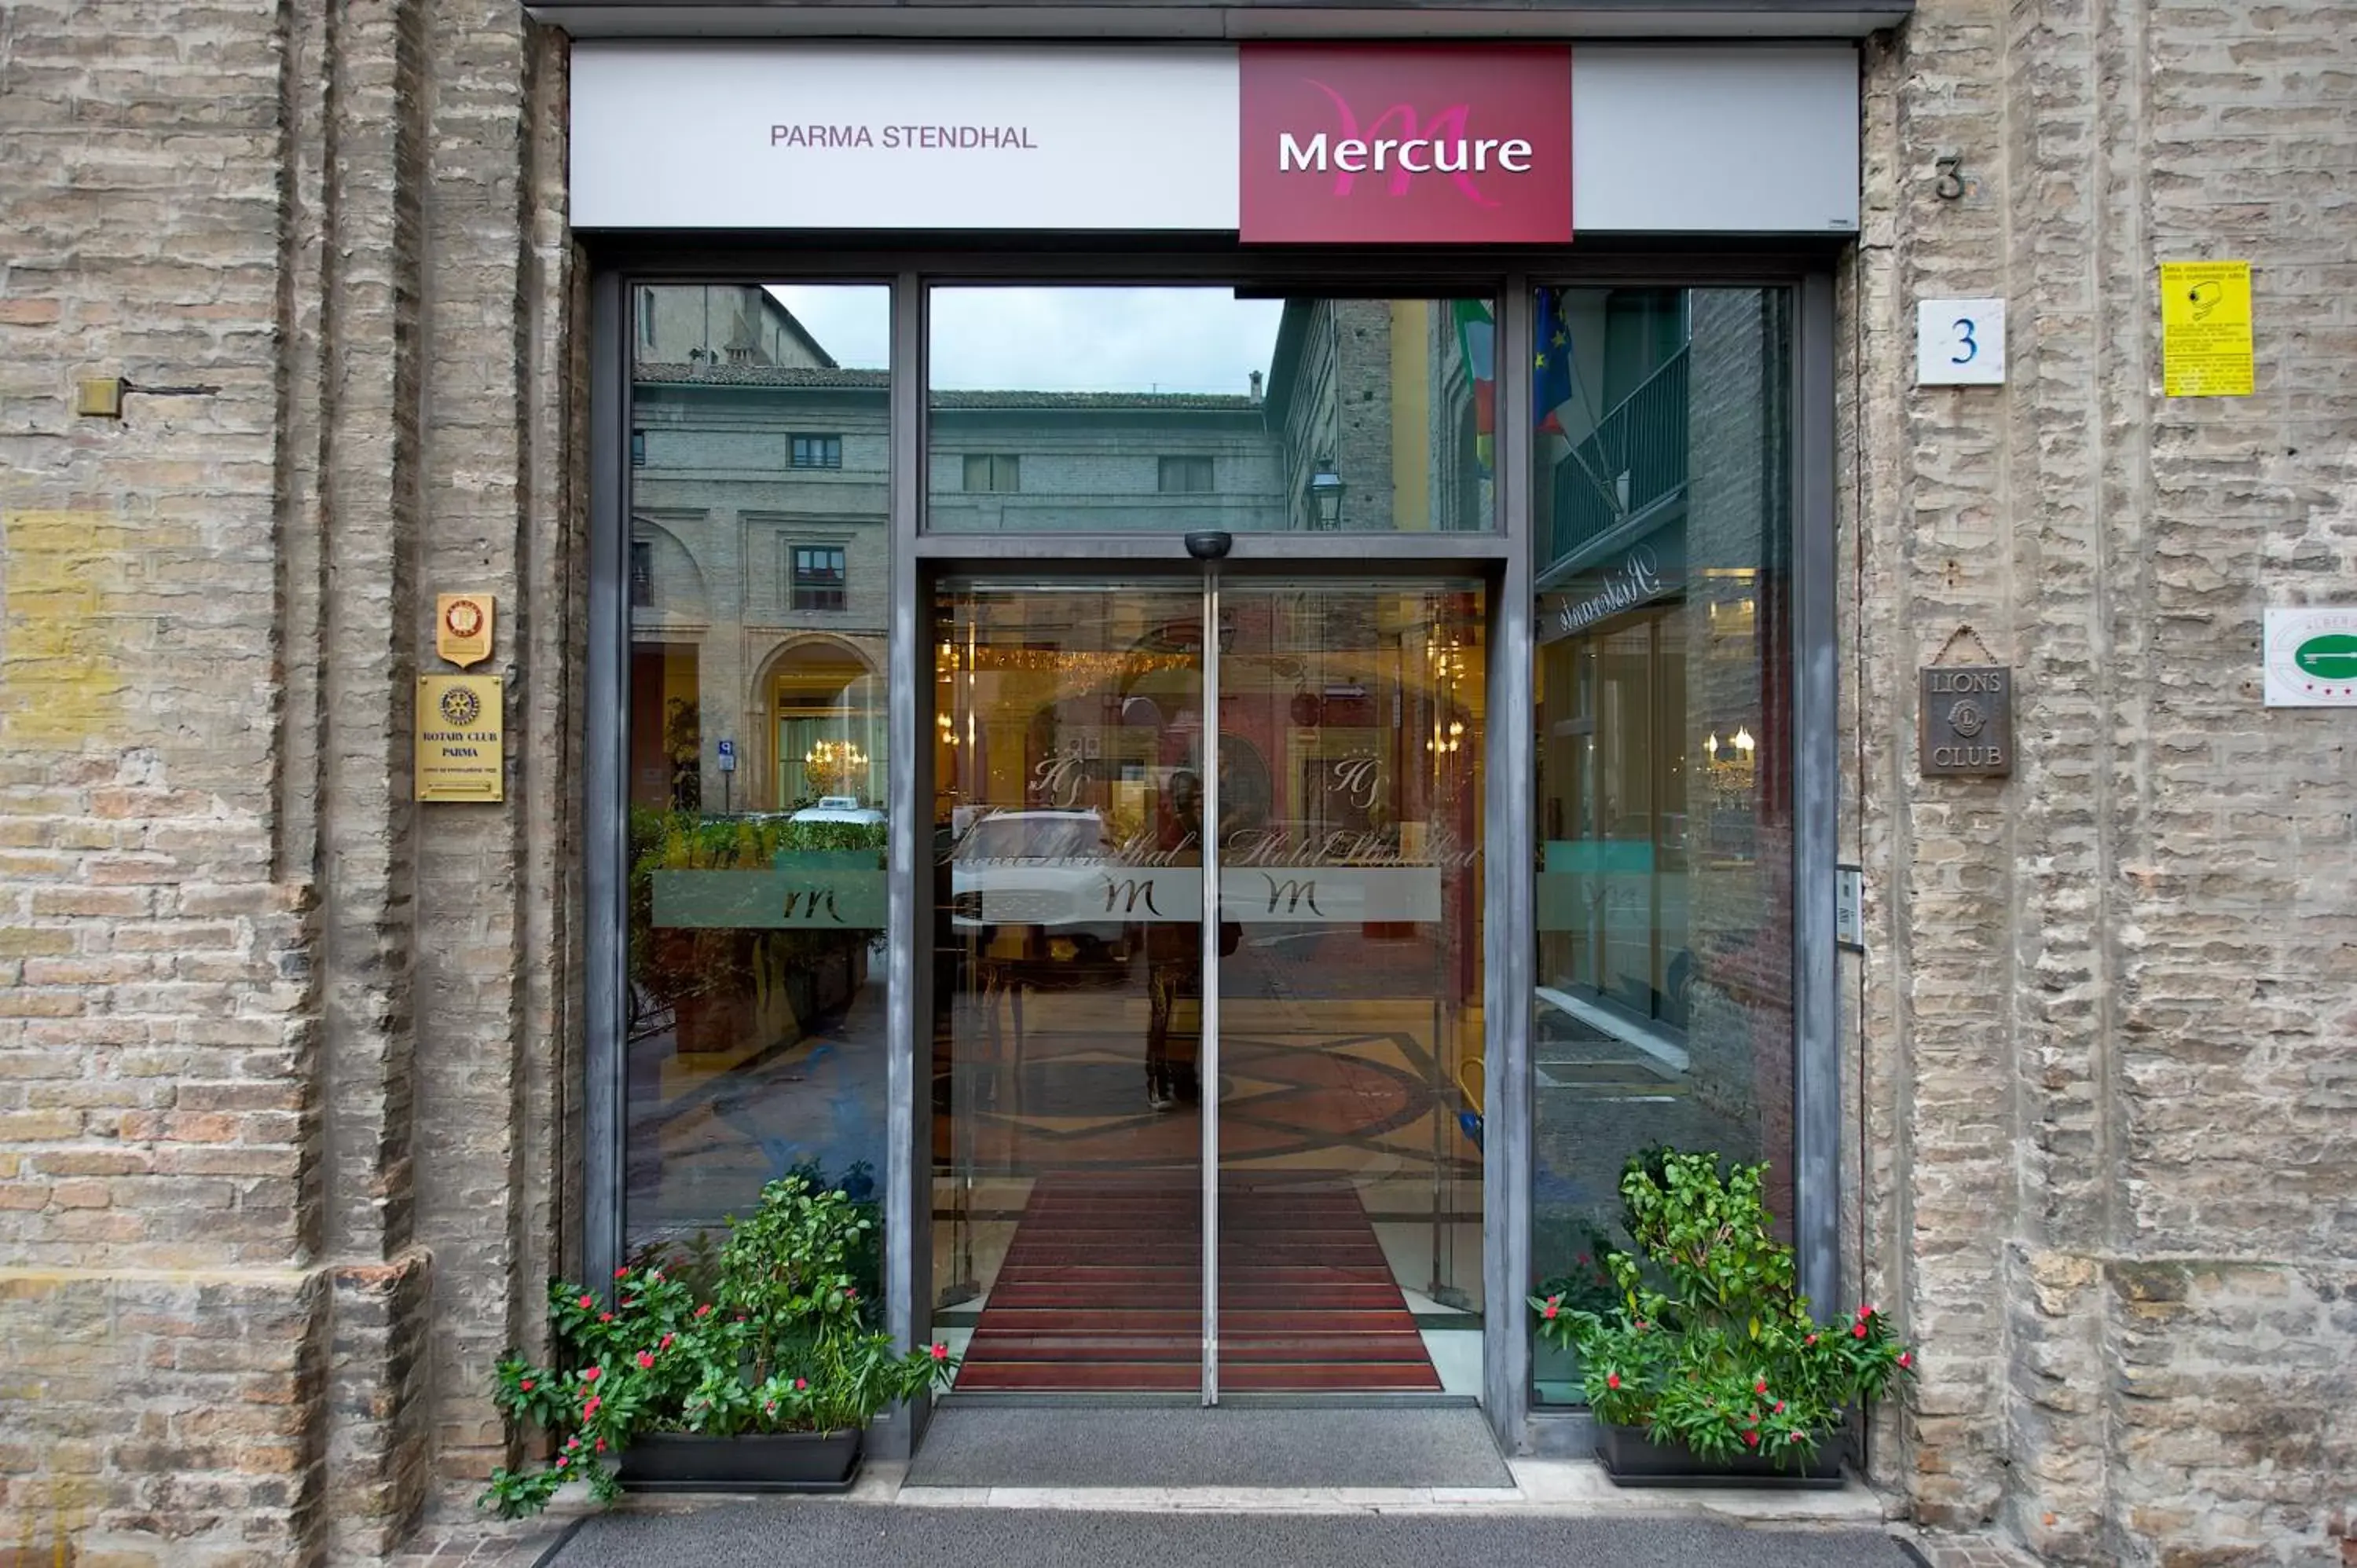 Facade/Entrance in Mercure Parma Stendhal